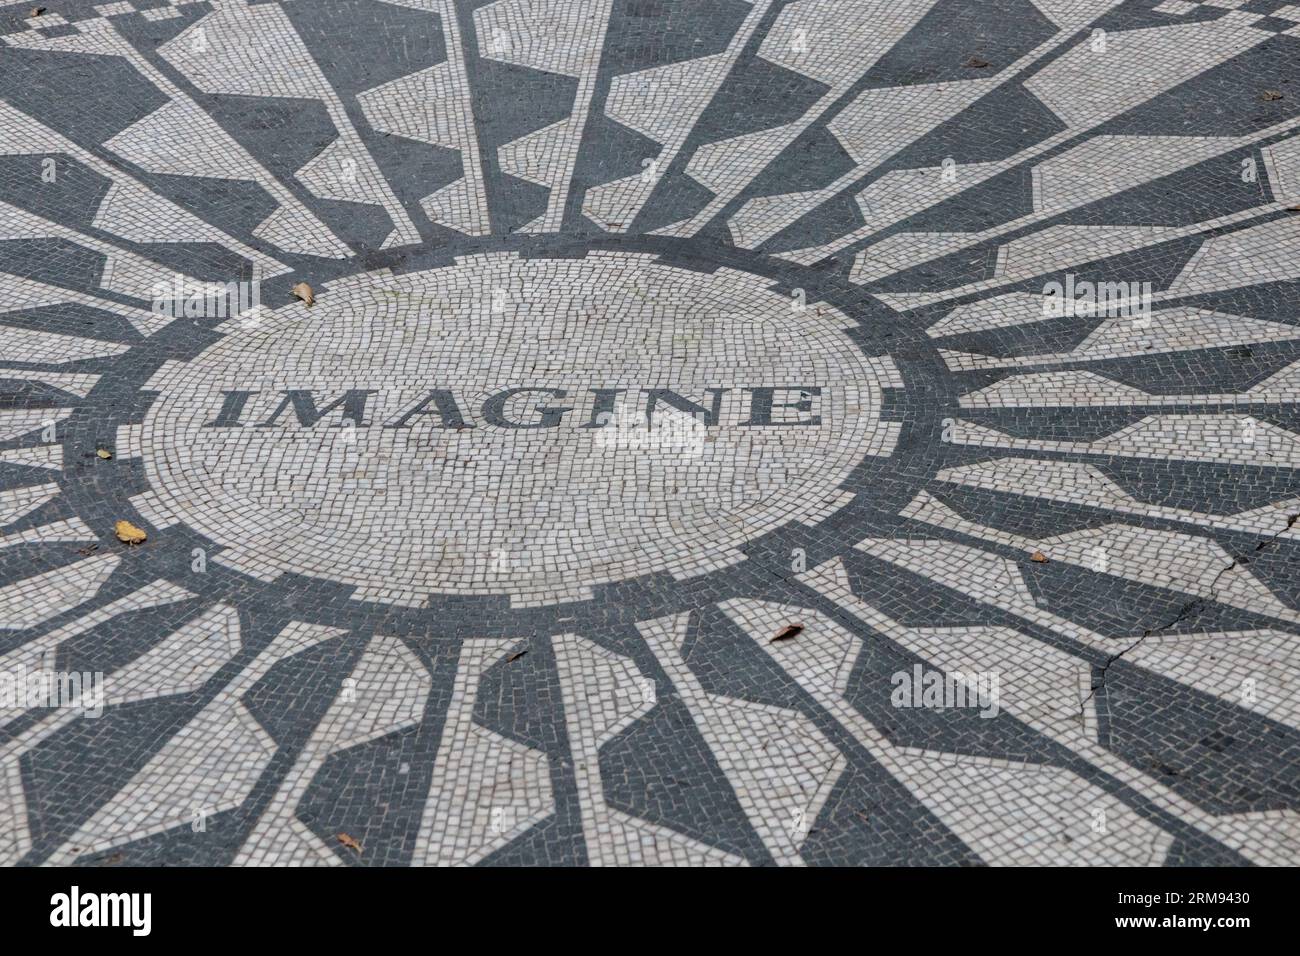 La légende 'imagine' sur la mosaïque commémorative de Strawberry Fields John Lennon, Central Park, New York, États-Unis Banque D'Images